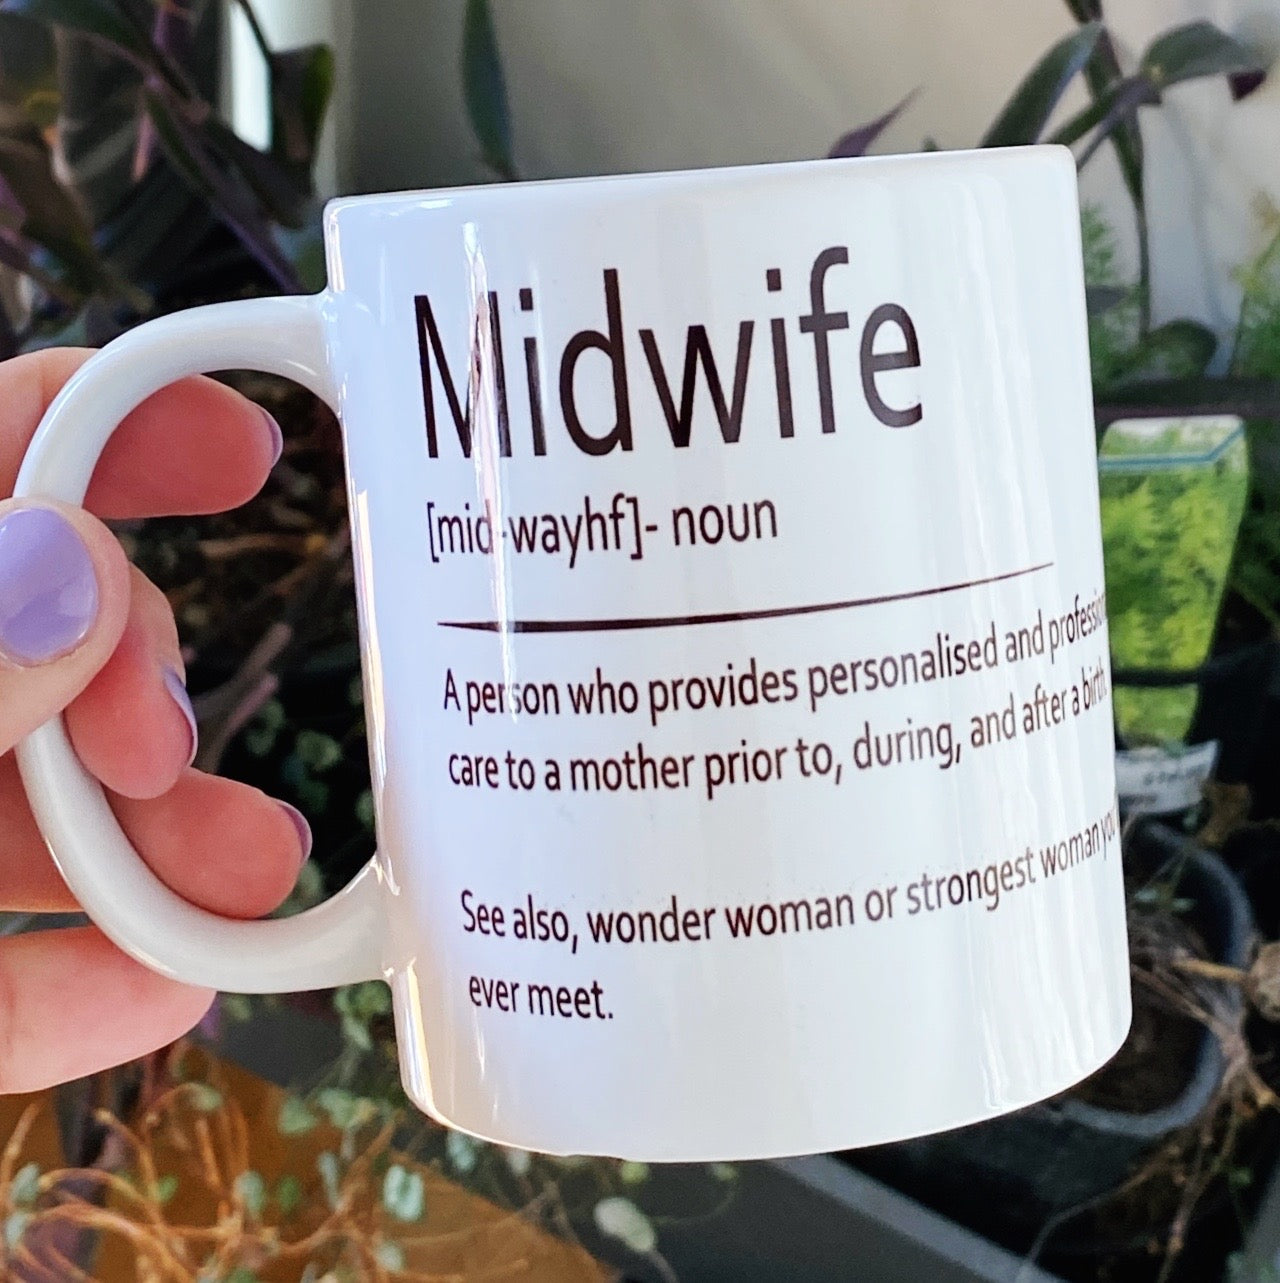 Midwife definition mug